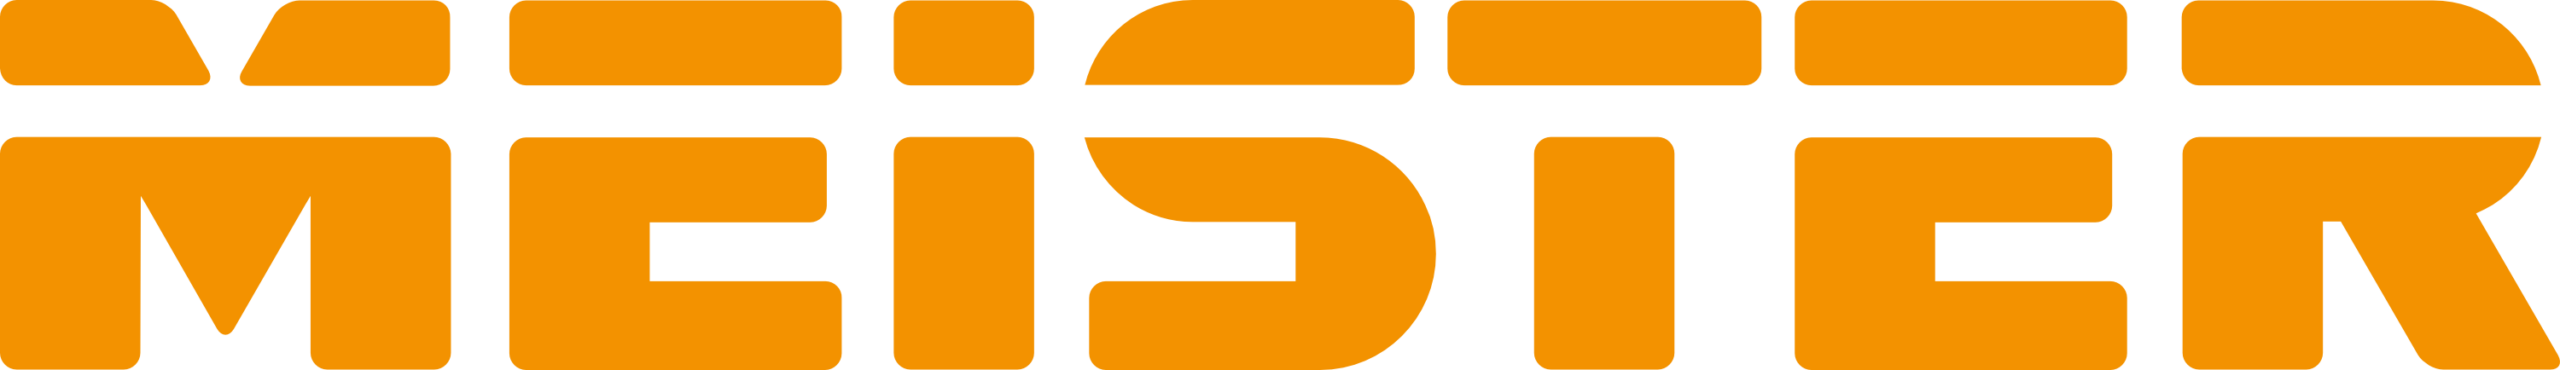 Meister logo